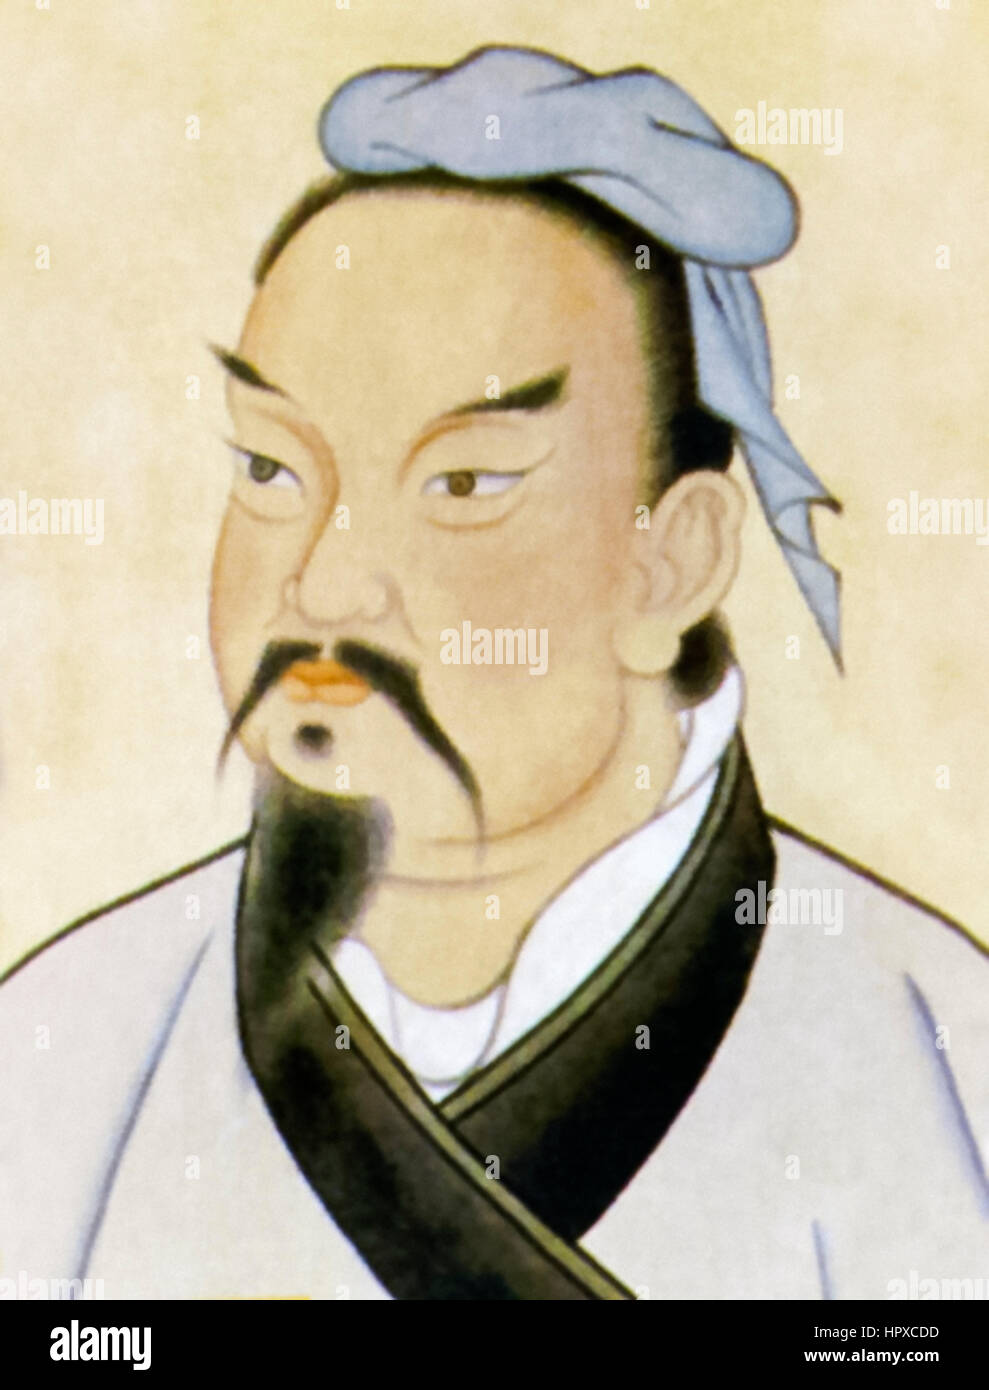 Sun Tzu (Sunzi) (ca. 544-496BC), chinesischer general und Philosoph beste erinnerte sich als Autor von "The Art of War" im 5. Jahrhundert v. Chr. über militärische Strategie und Taktik. Stockfoto